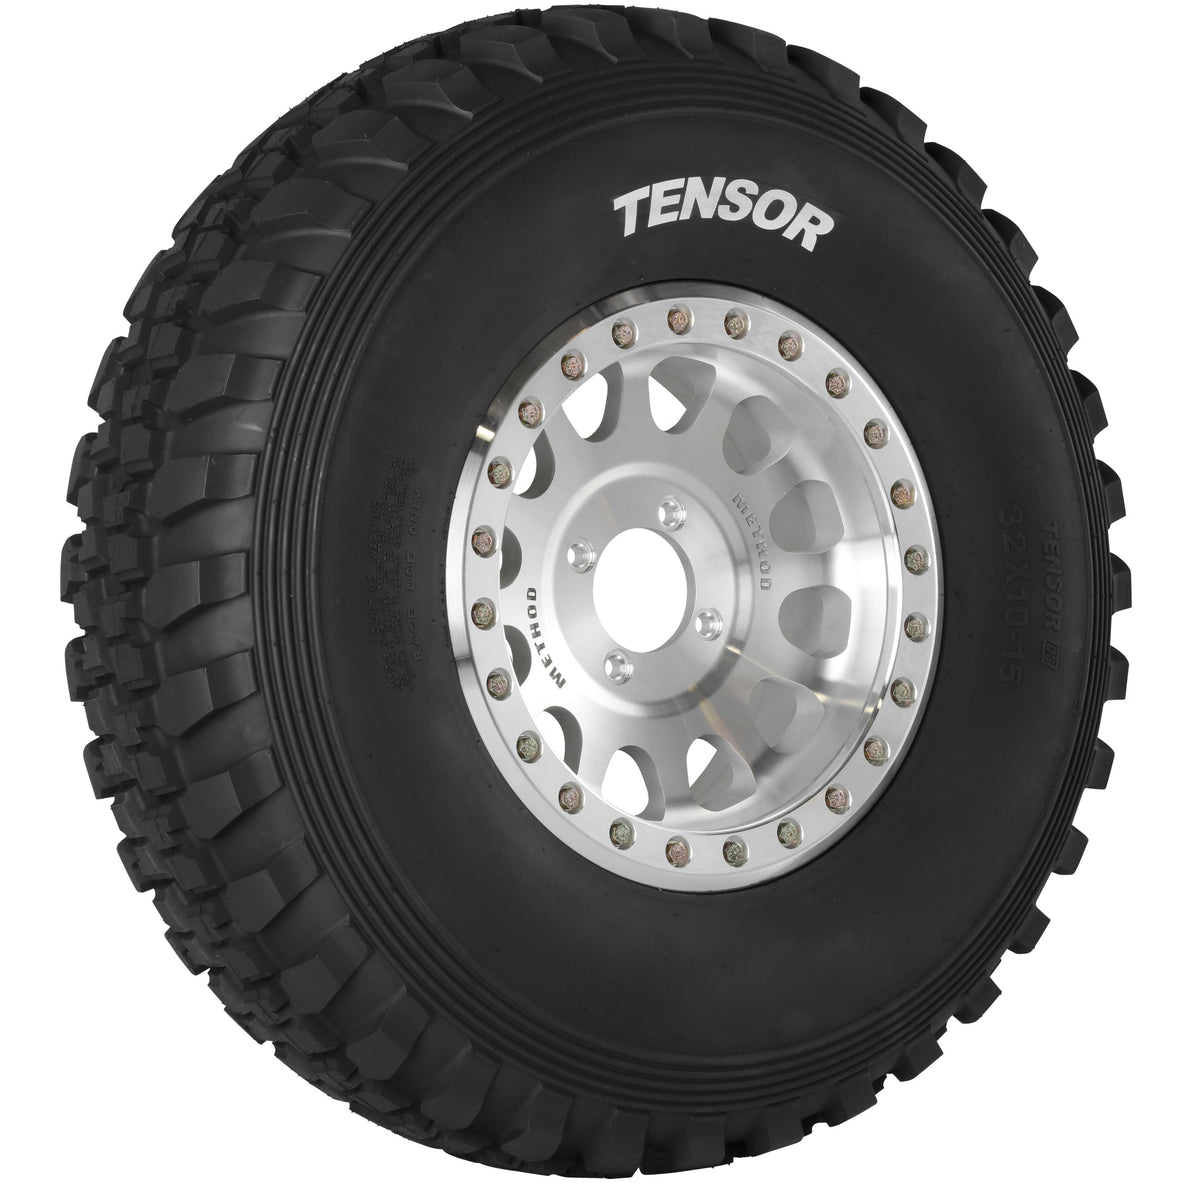 Tensor DS “Desert Series” Tires